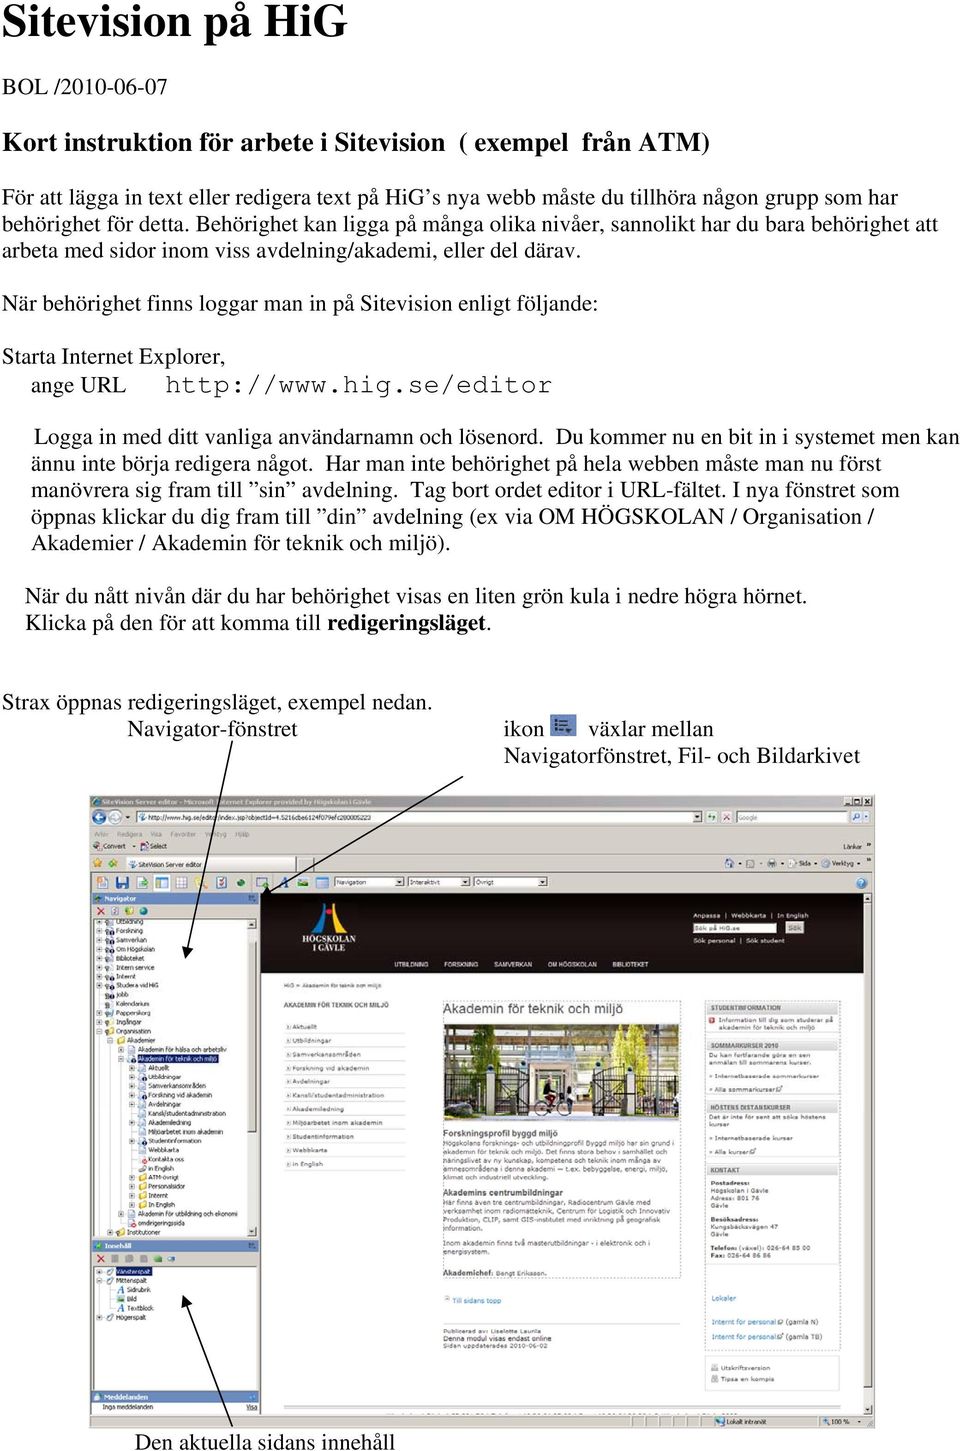 När behörighet finns loggar man in på Sitevision enligt följande: Starta Internet Explorer, ange URL http://www.hig.se/editor Logga in med ditt vanliga användarnamn och lösenord.